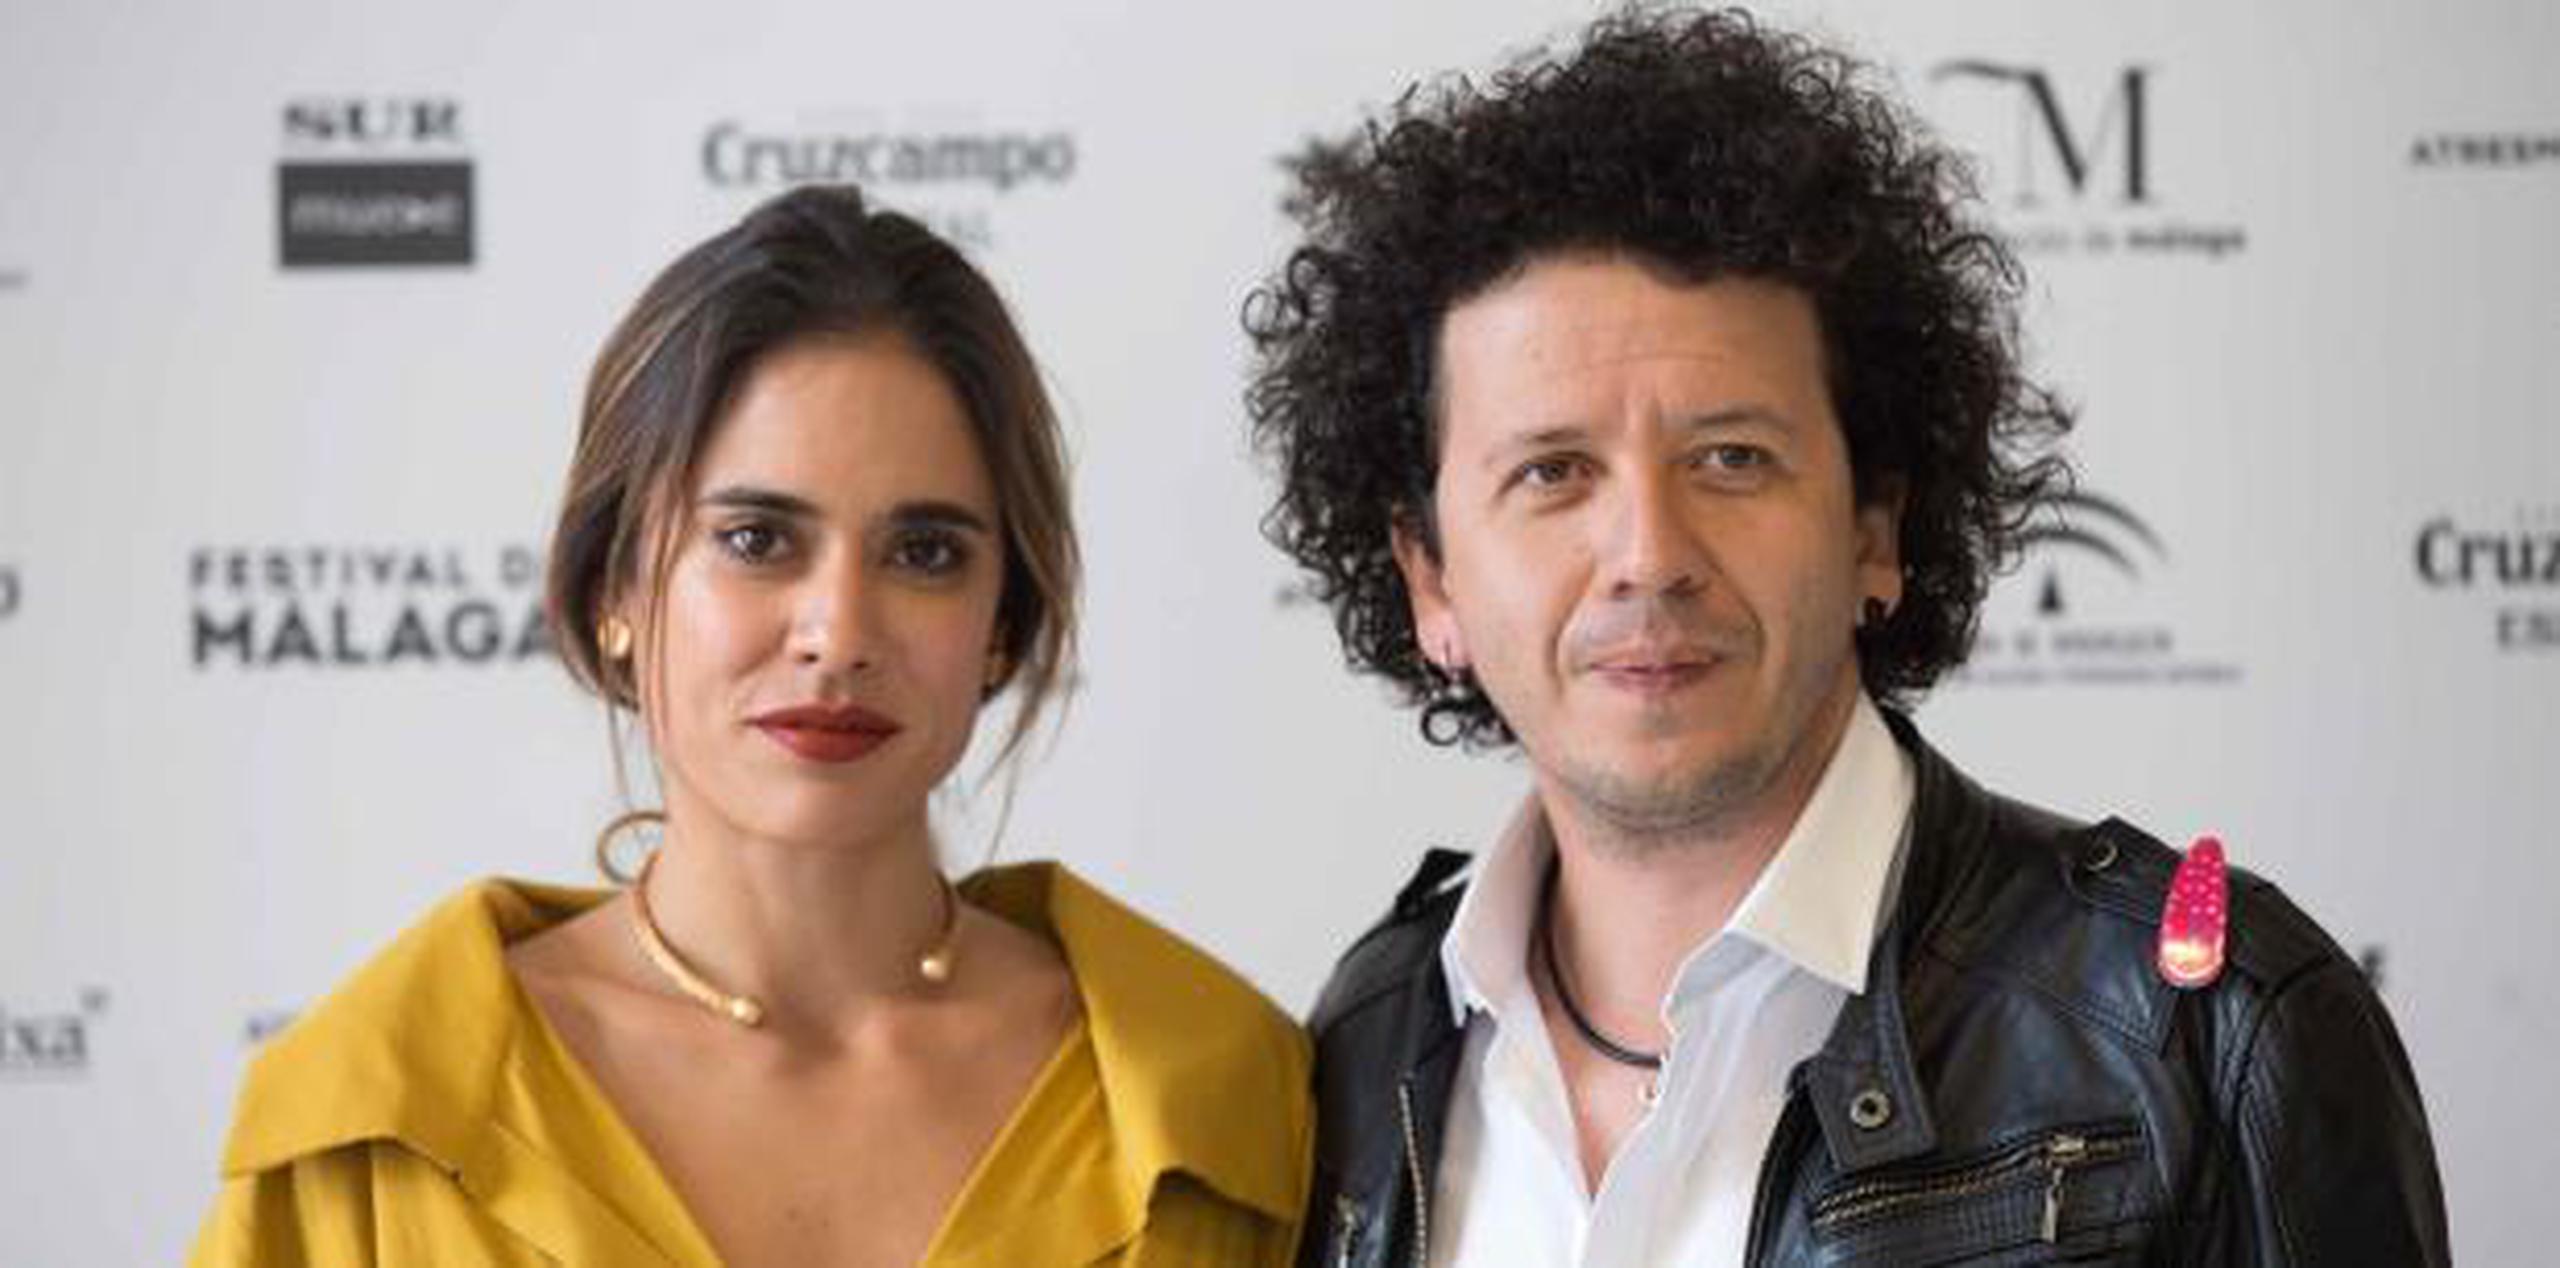 La actriz colombiana y coprotagonista de la cinta Carolina Ramírez señaló que durante la grabación se creó "un círculo de protección femenina". (EFE)